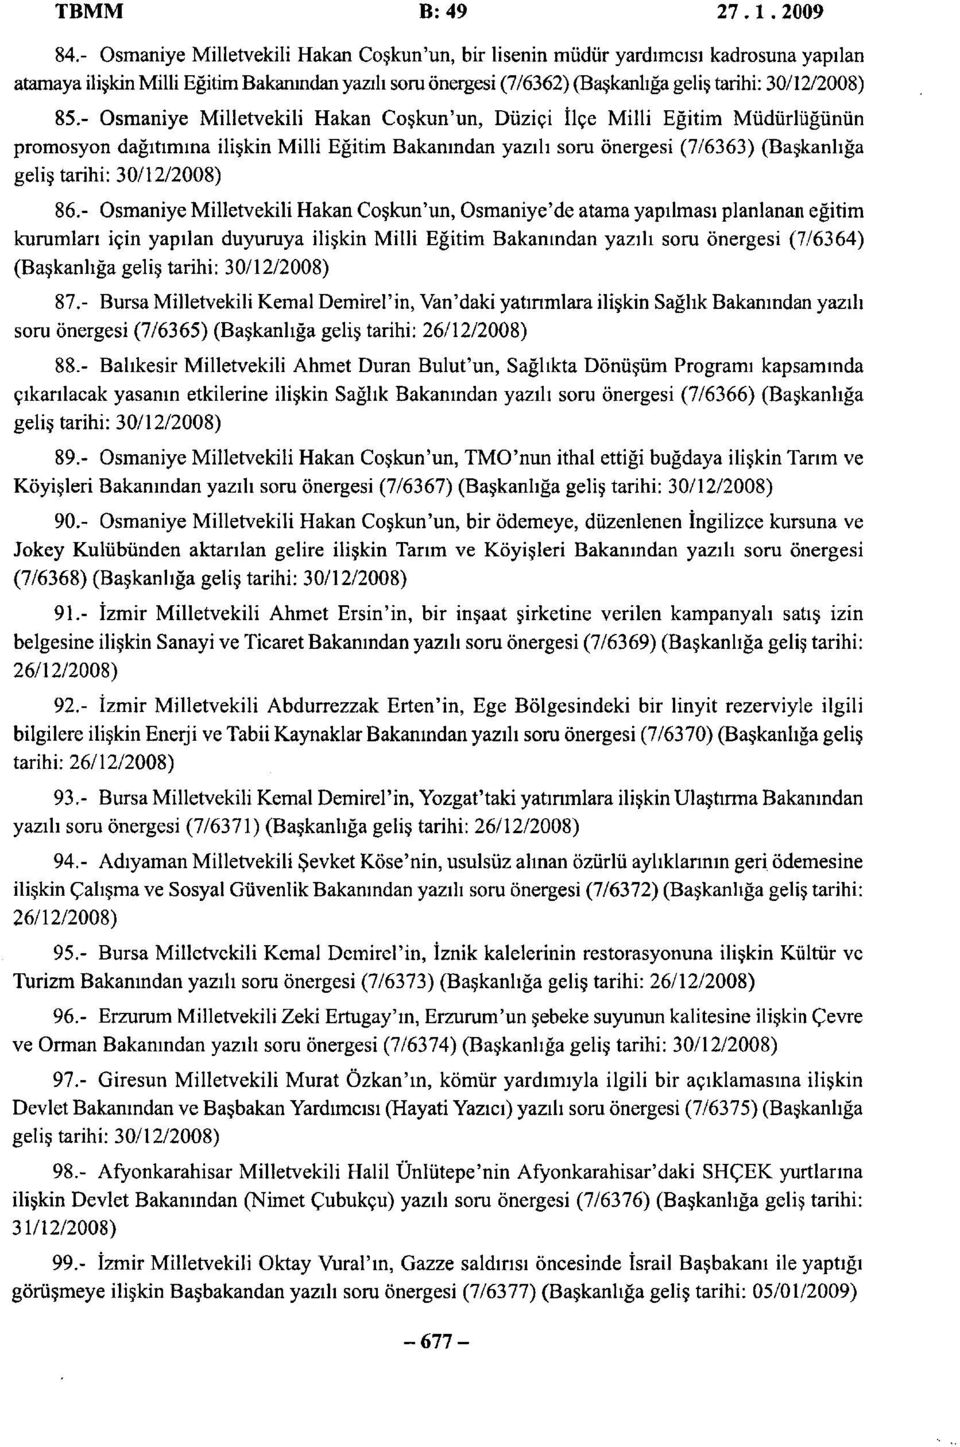 - Osmaniye Milletvekili Hakan Coşkun'un, Düziçi İlçe Milli Eğitim Müdürlüğünün promosyon dağıtımına ilişkin Milli Eğitim Bakanından yazılı soru önergesi (7/6363) (Başkanlığa geliş tarihi: 30/12/2008)